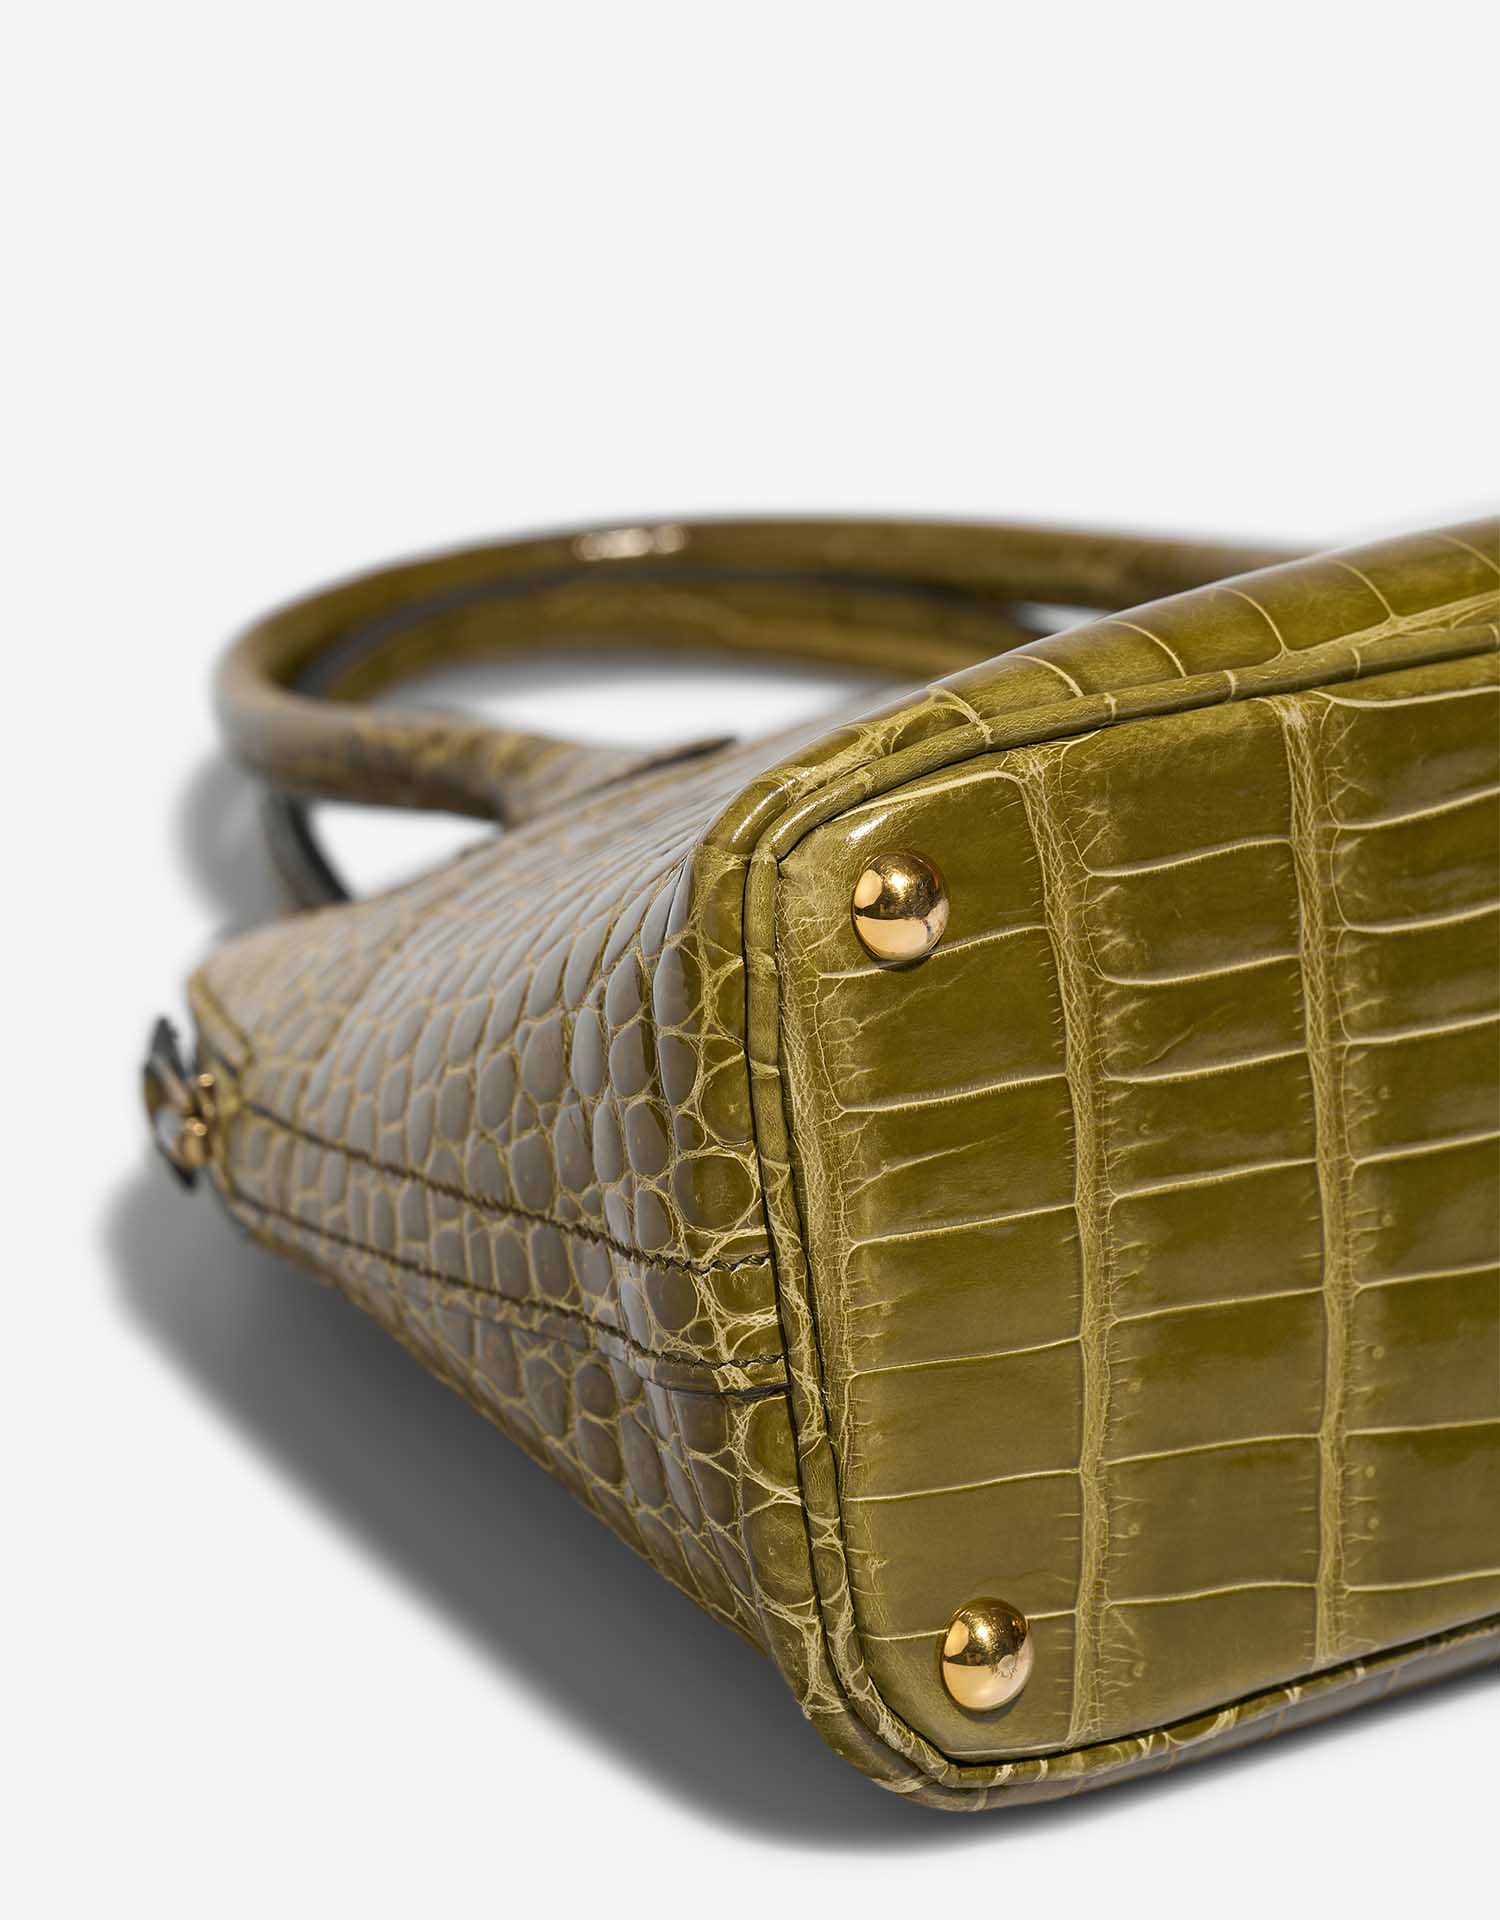 Hermès Bolide 27 VertAnis Gebrauchsspuren 3 | Verkaufen Sie Ihre Designer-Tasche auf Saclab.com